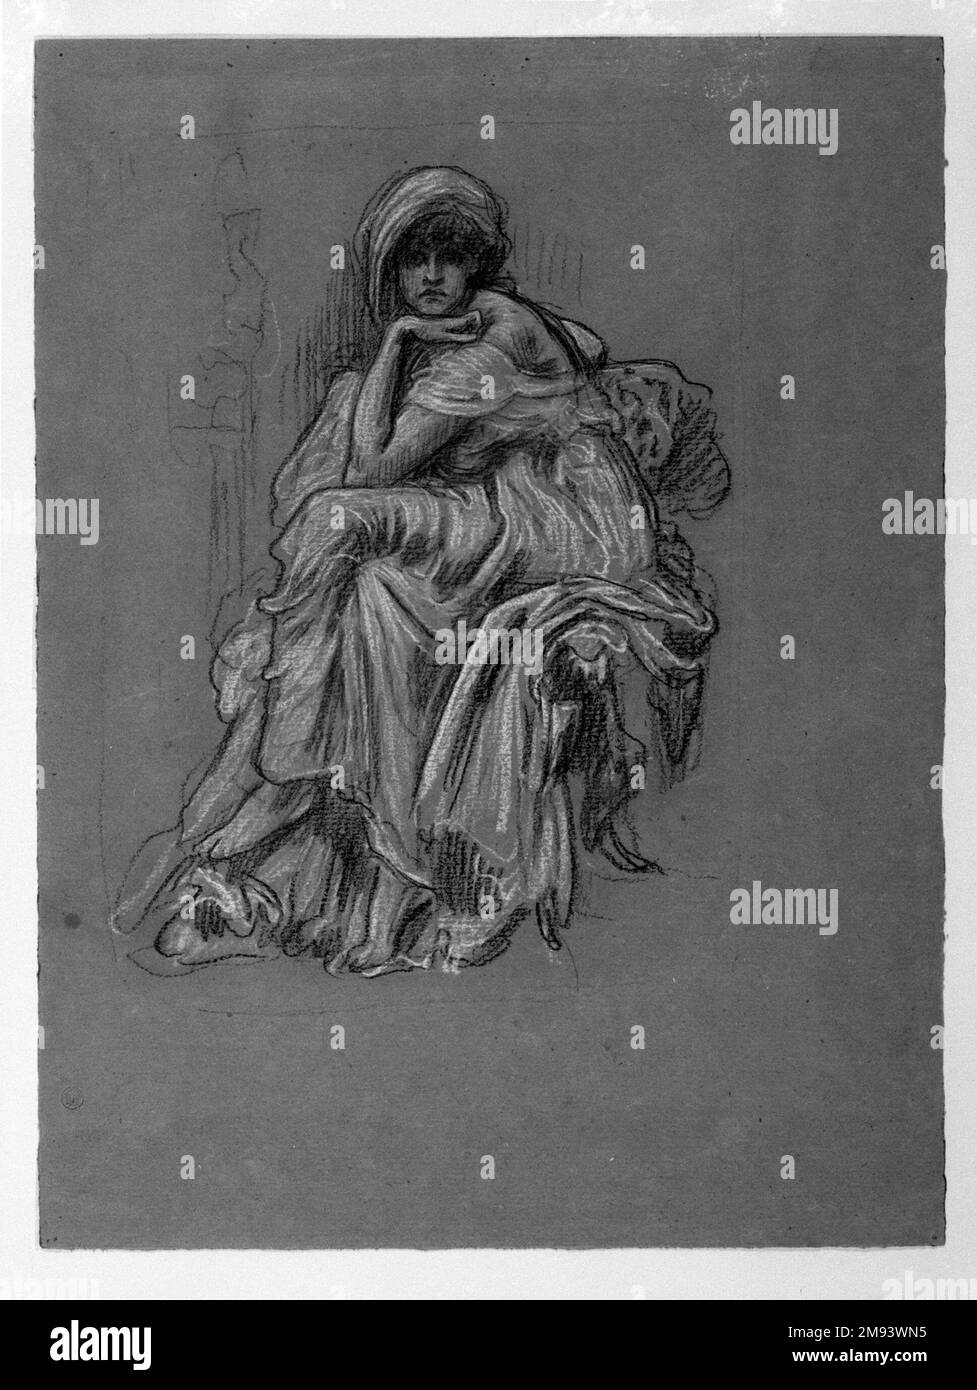 Studio per la pittura 'Sybill' Lord Frederick Leighton (inglese, 1830-1896). Studio per la pittura 'Sybil.'. Carbone di legna e gesso su carta di wove, foglio: 14 9/16 x 10 7/8 poll. (37 x 27,6 cm). La formazione accademica di Frederic Leighton gli insegnò a preparare numerosi studi di figure e tendaggi per i suoi dipinti. Questo disegno di una donna classica vestita a fodera è uno studio per un grande dipinto ad olio, Sybil, che espone nel 1889. La sua posa ricorda la figura di Albrecht Dürer a Melencolia, mentre la sua presenza scultorea riflette il debito di Leighton nei confronti delle monumentali figure femminili di Michelangelo. Entro il 1880 Foto Stock